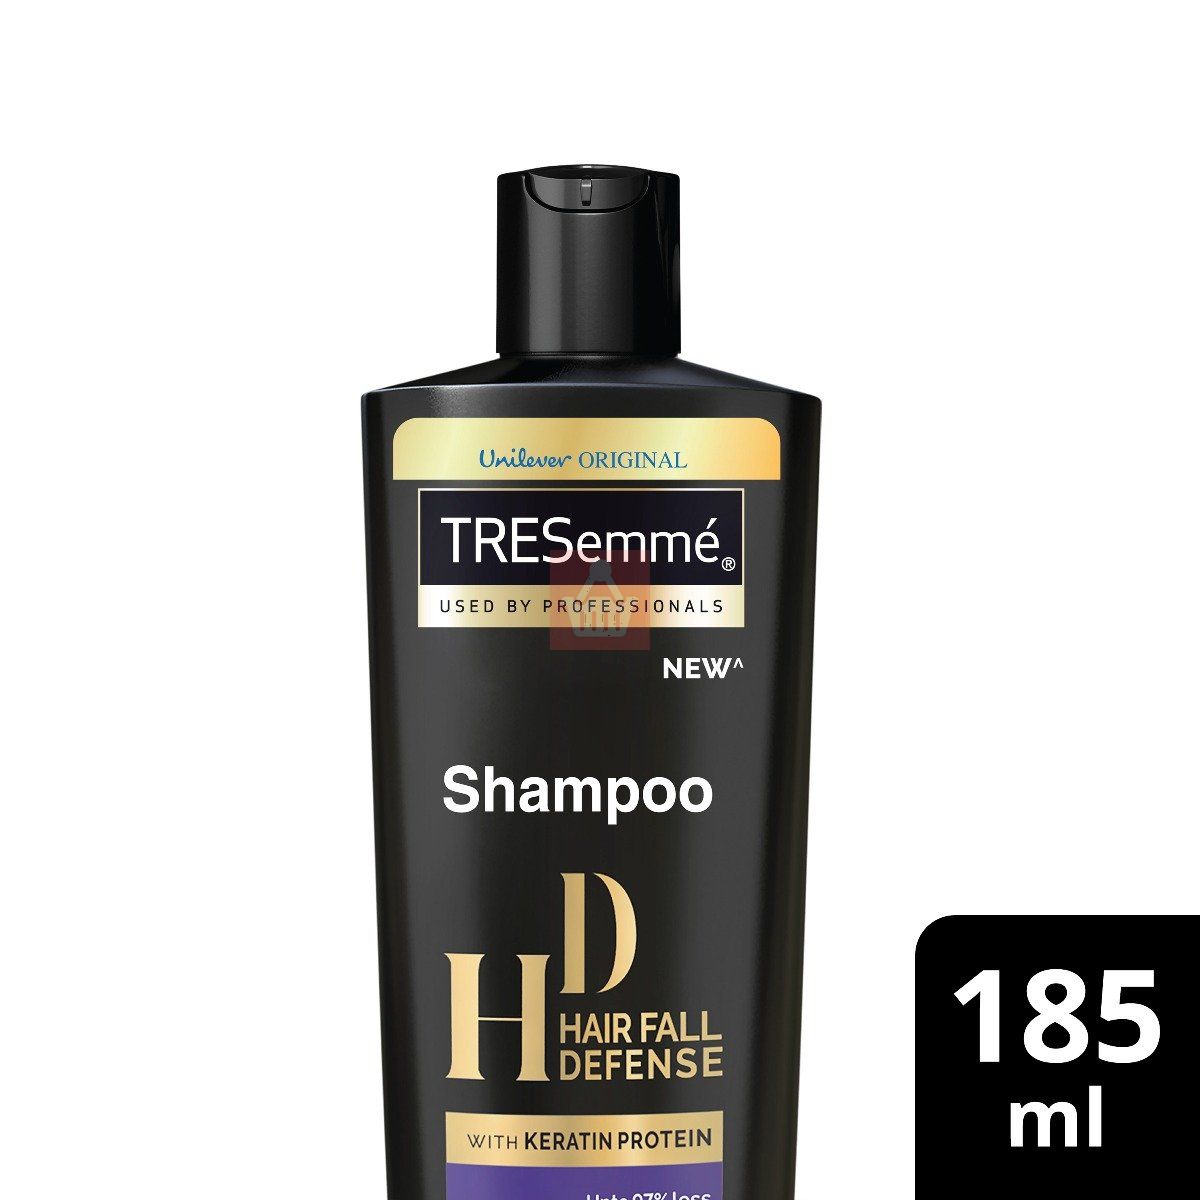 Tresemme Shampoo Hair Fall Defense 185ml